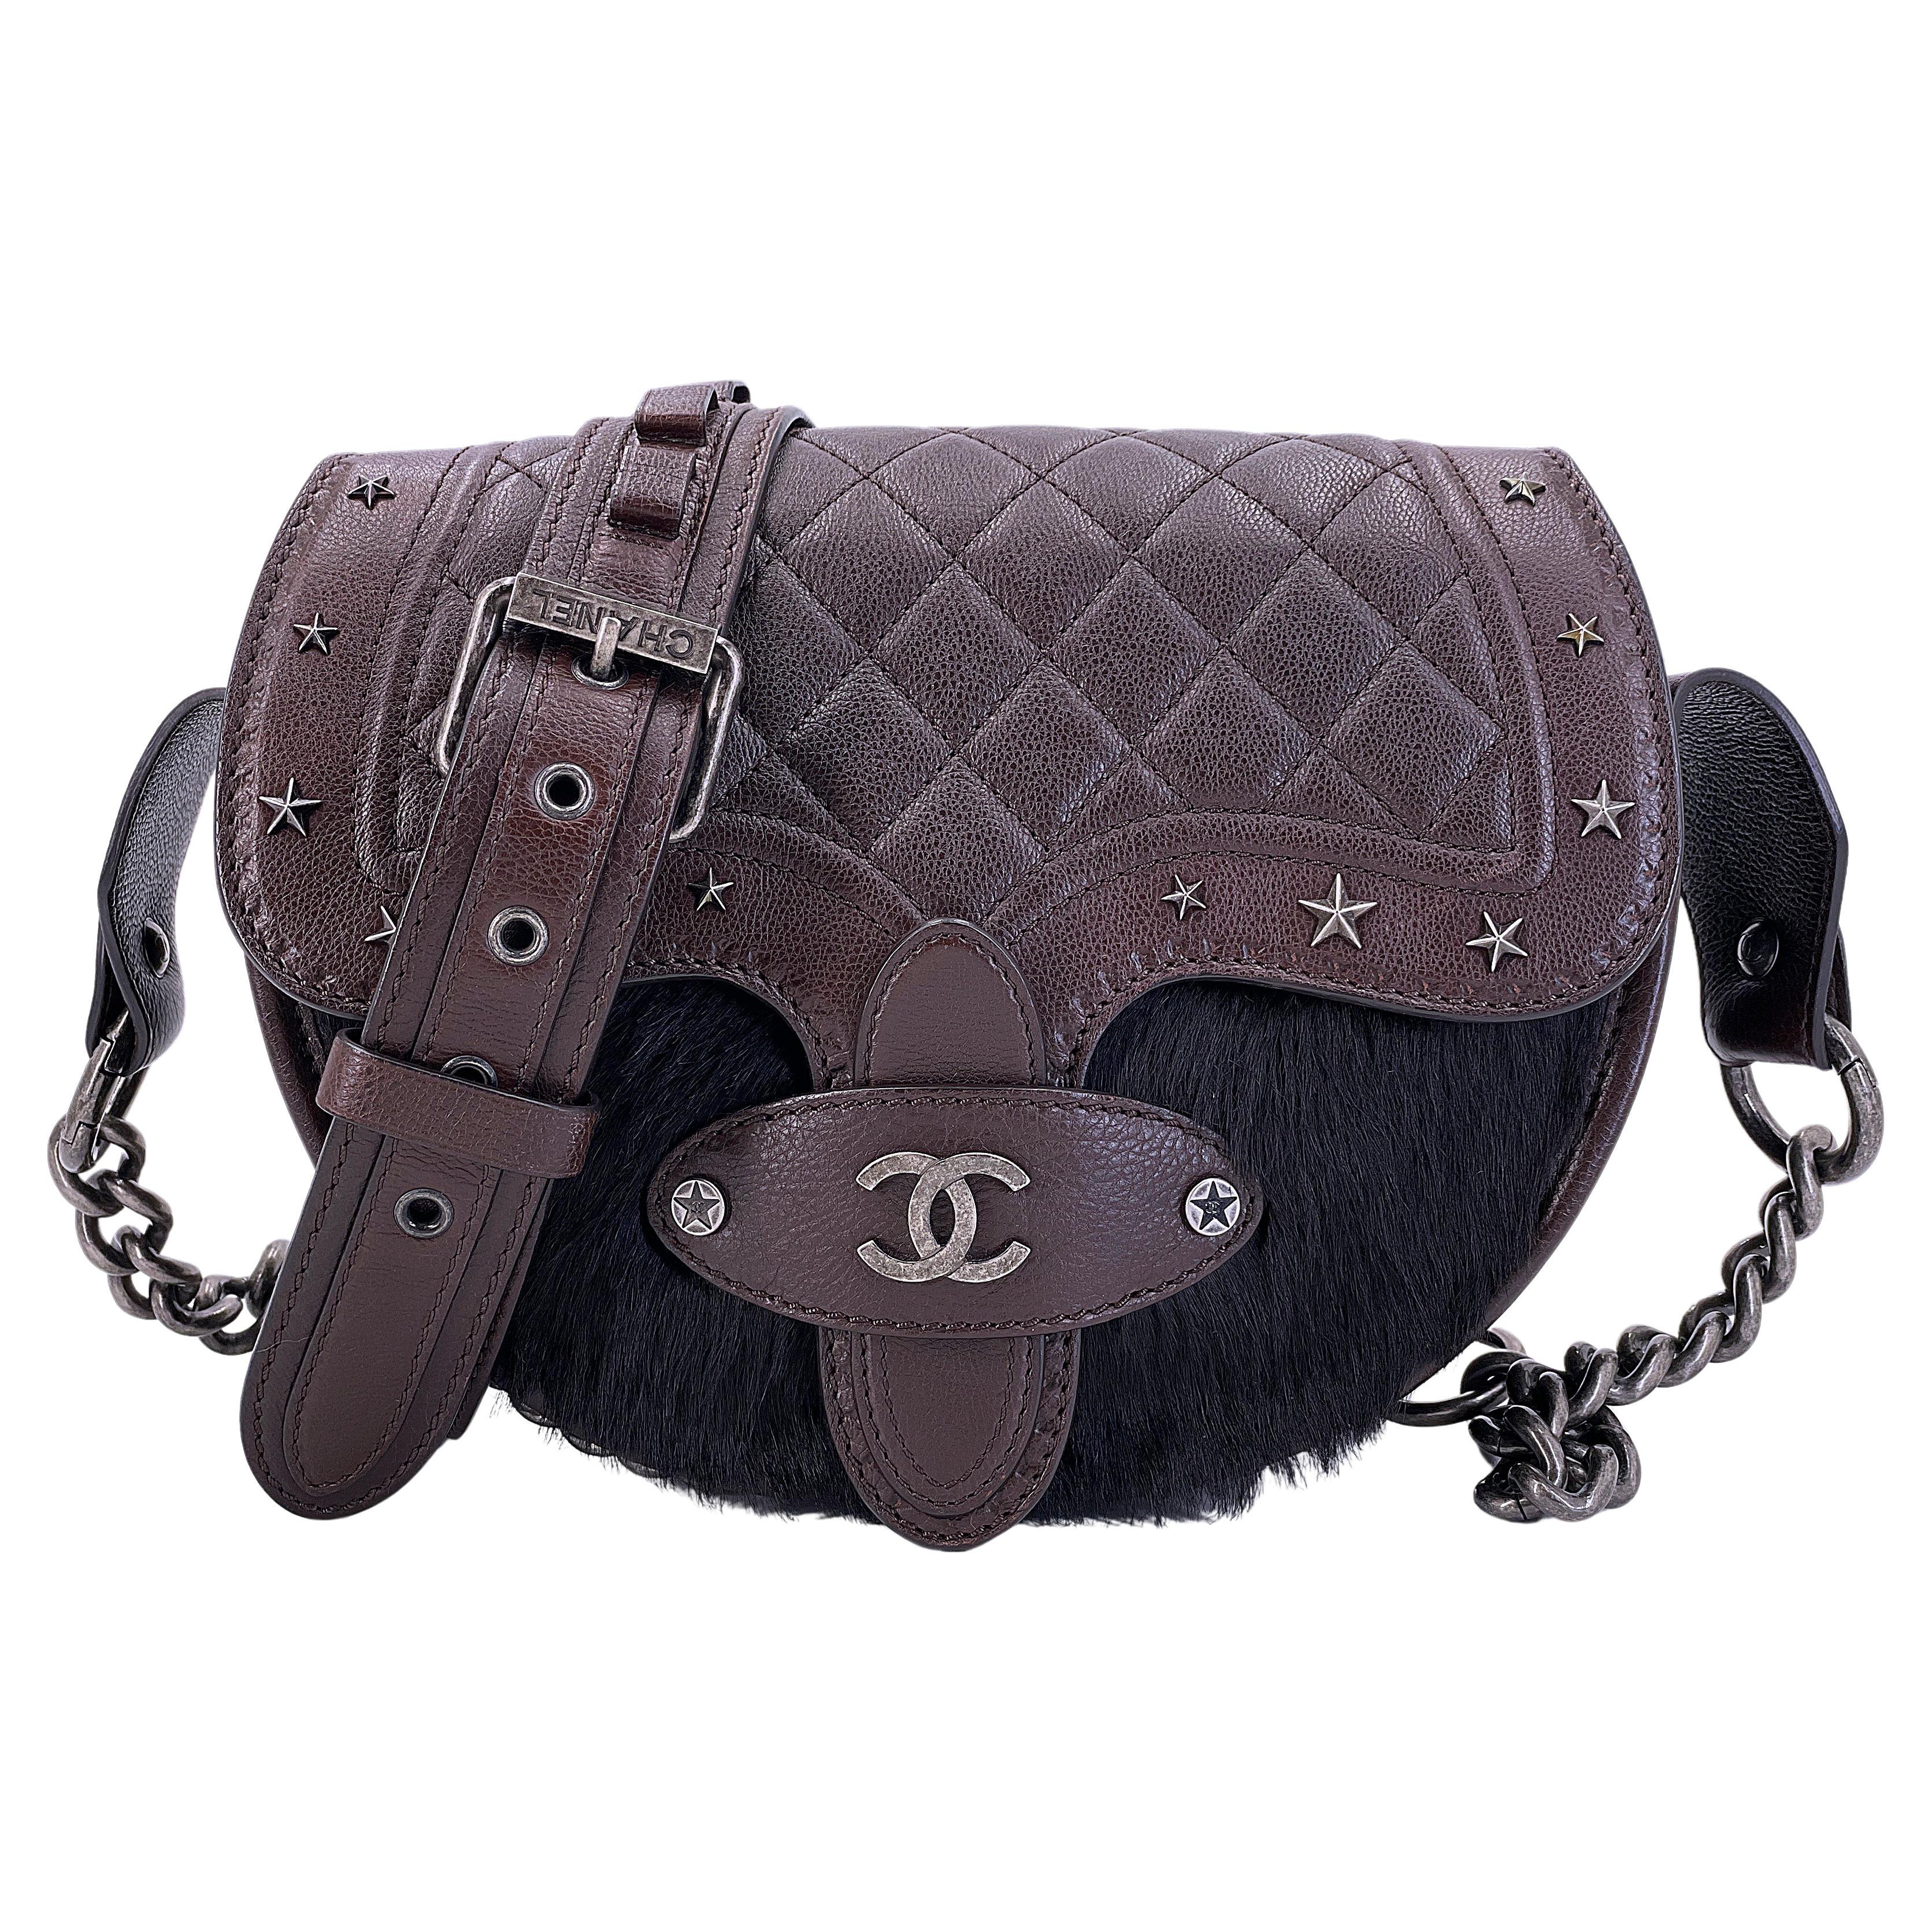 Chanel 2014 Paris Dallas Métiers d'Art Brown Pony Hair Bullet Strap Bag 67762 For Sale